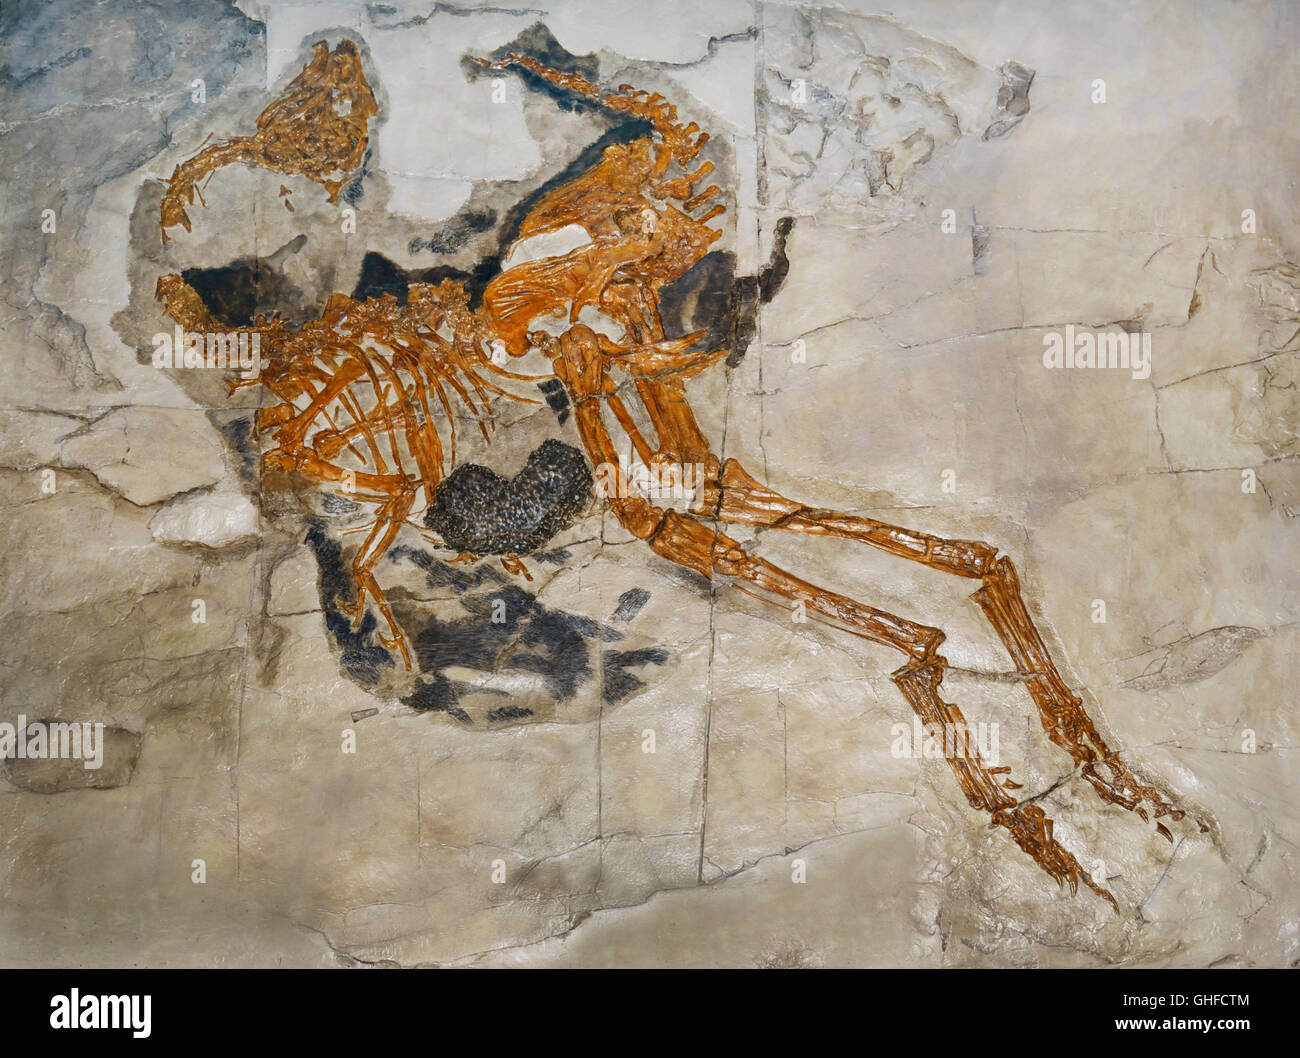 Caudipteryx zoui, le premier non-oiseau fossile de dinosaure trouvé avec plumes modernes, Crétacé précoce, Liaoning Prov. Chine Banque D'Images